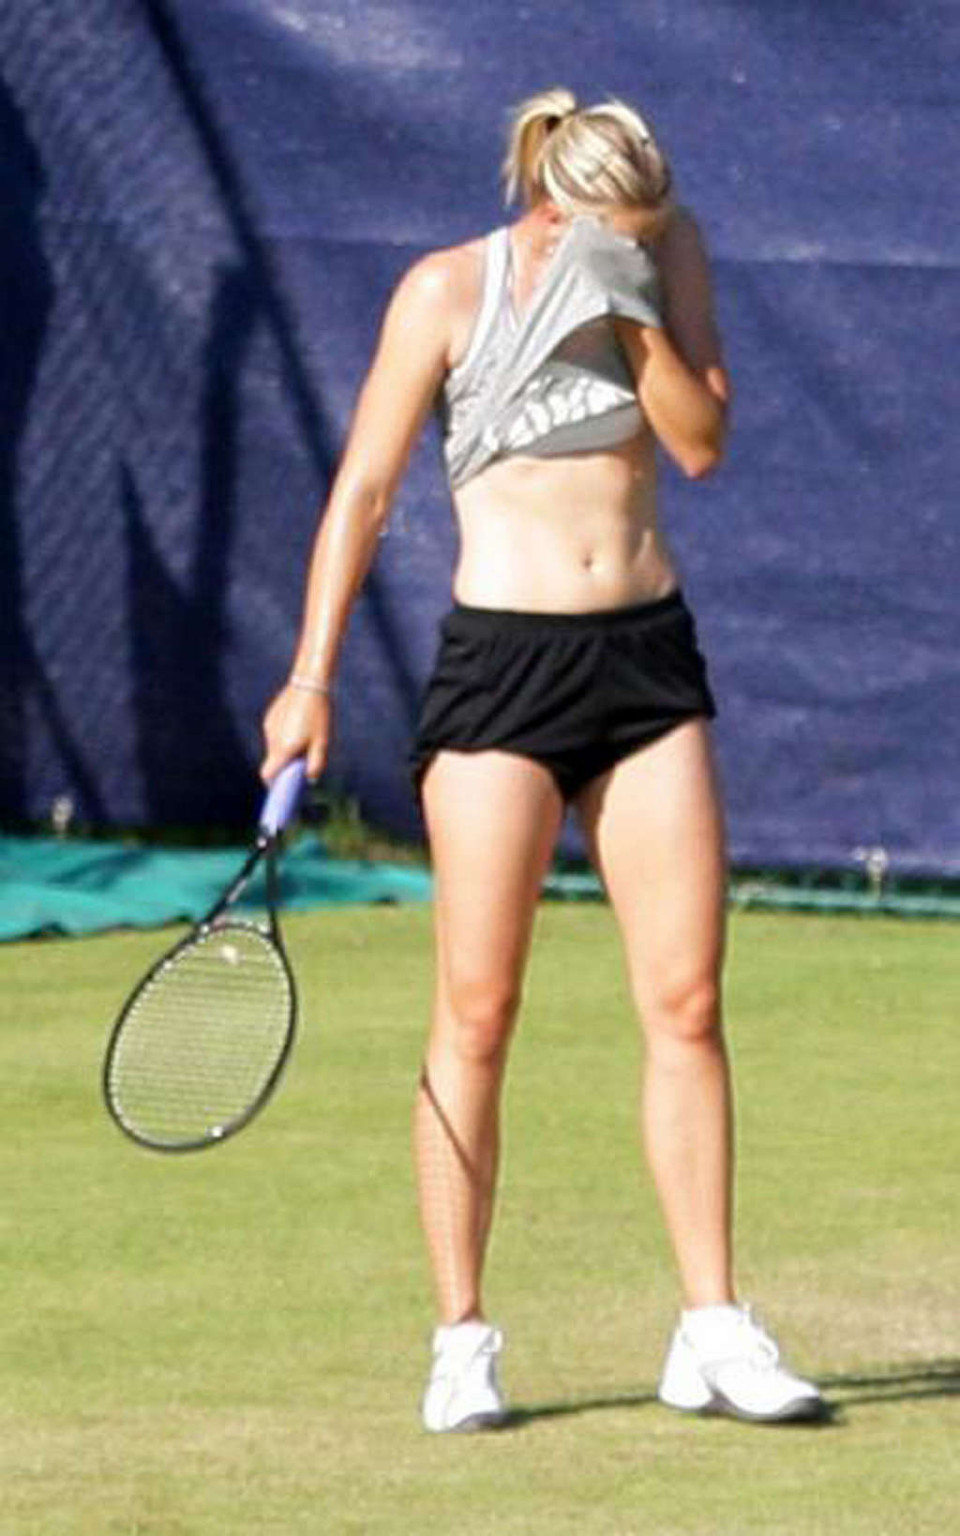 Maria sharapova nipple slip während spielen tennis paparazzi schießt
 #75346406